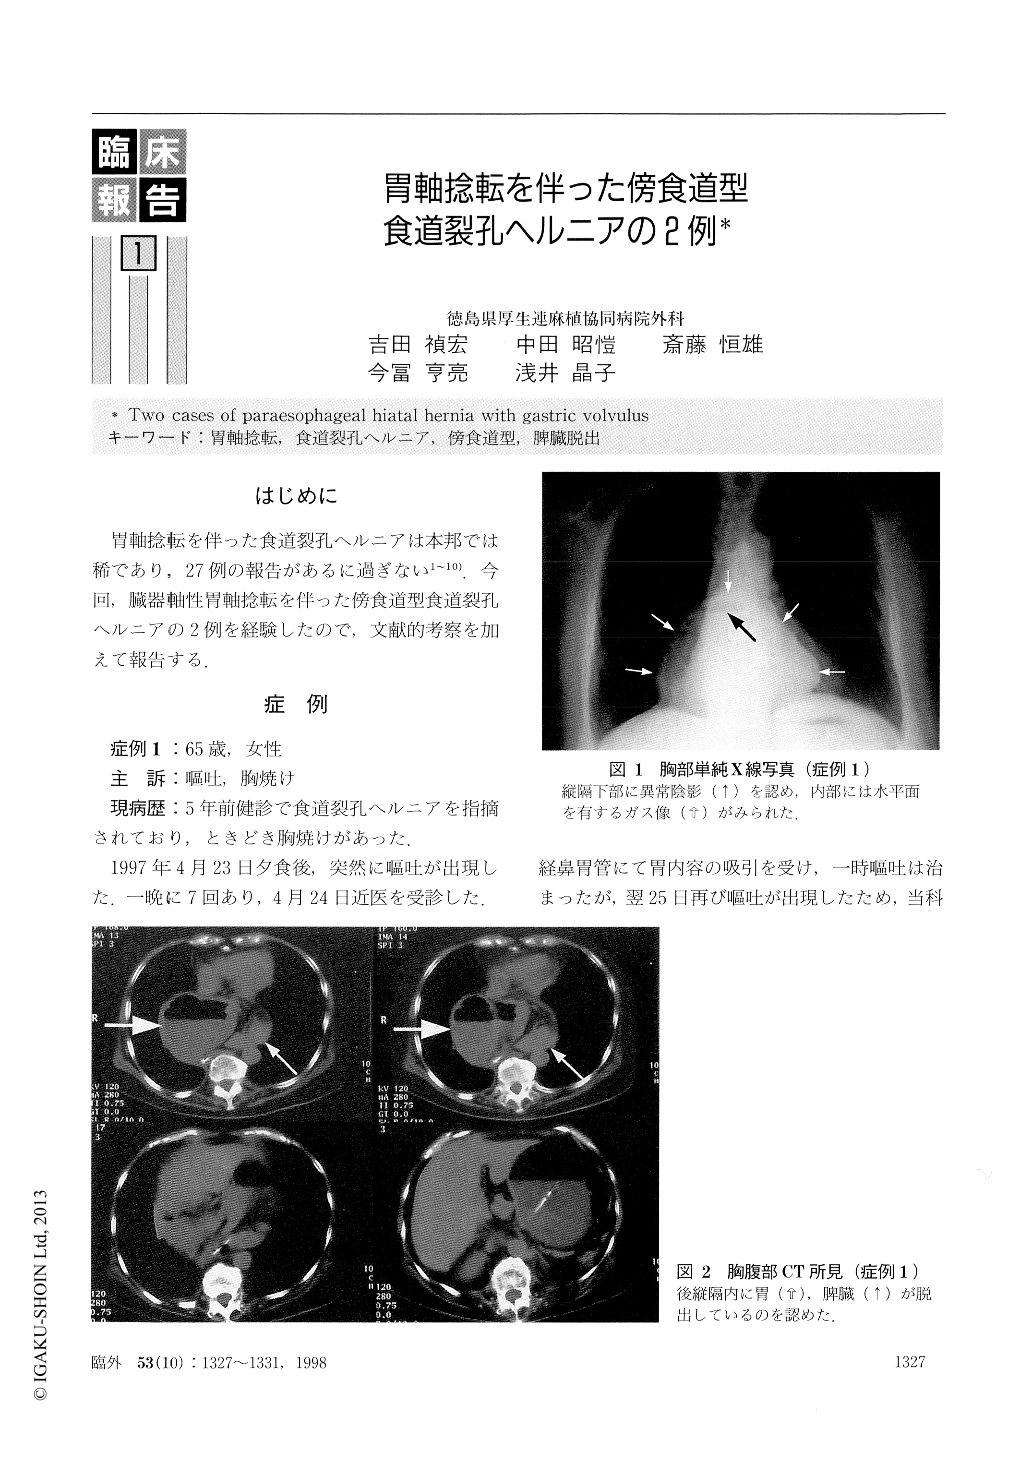 胃軸捻転を伴った傍食道型食道裂孔ヘルニアの2例 臨床外科 53巻10号 医書 Jp